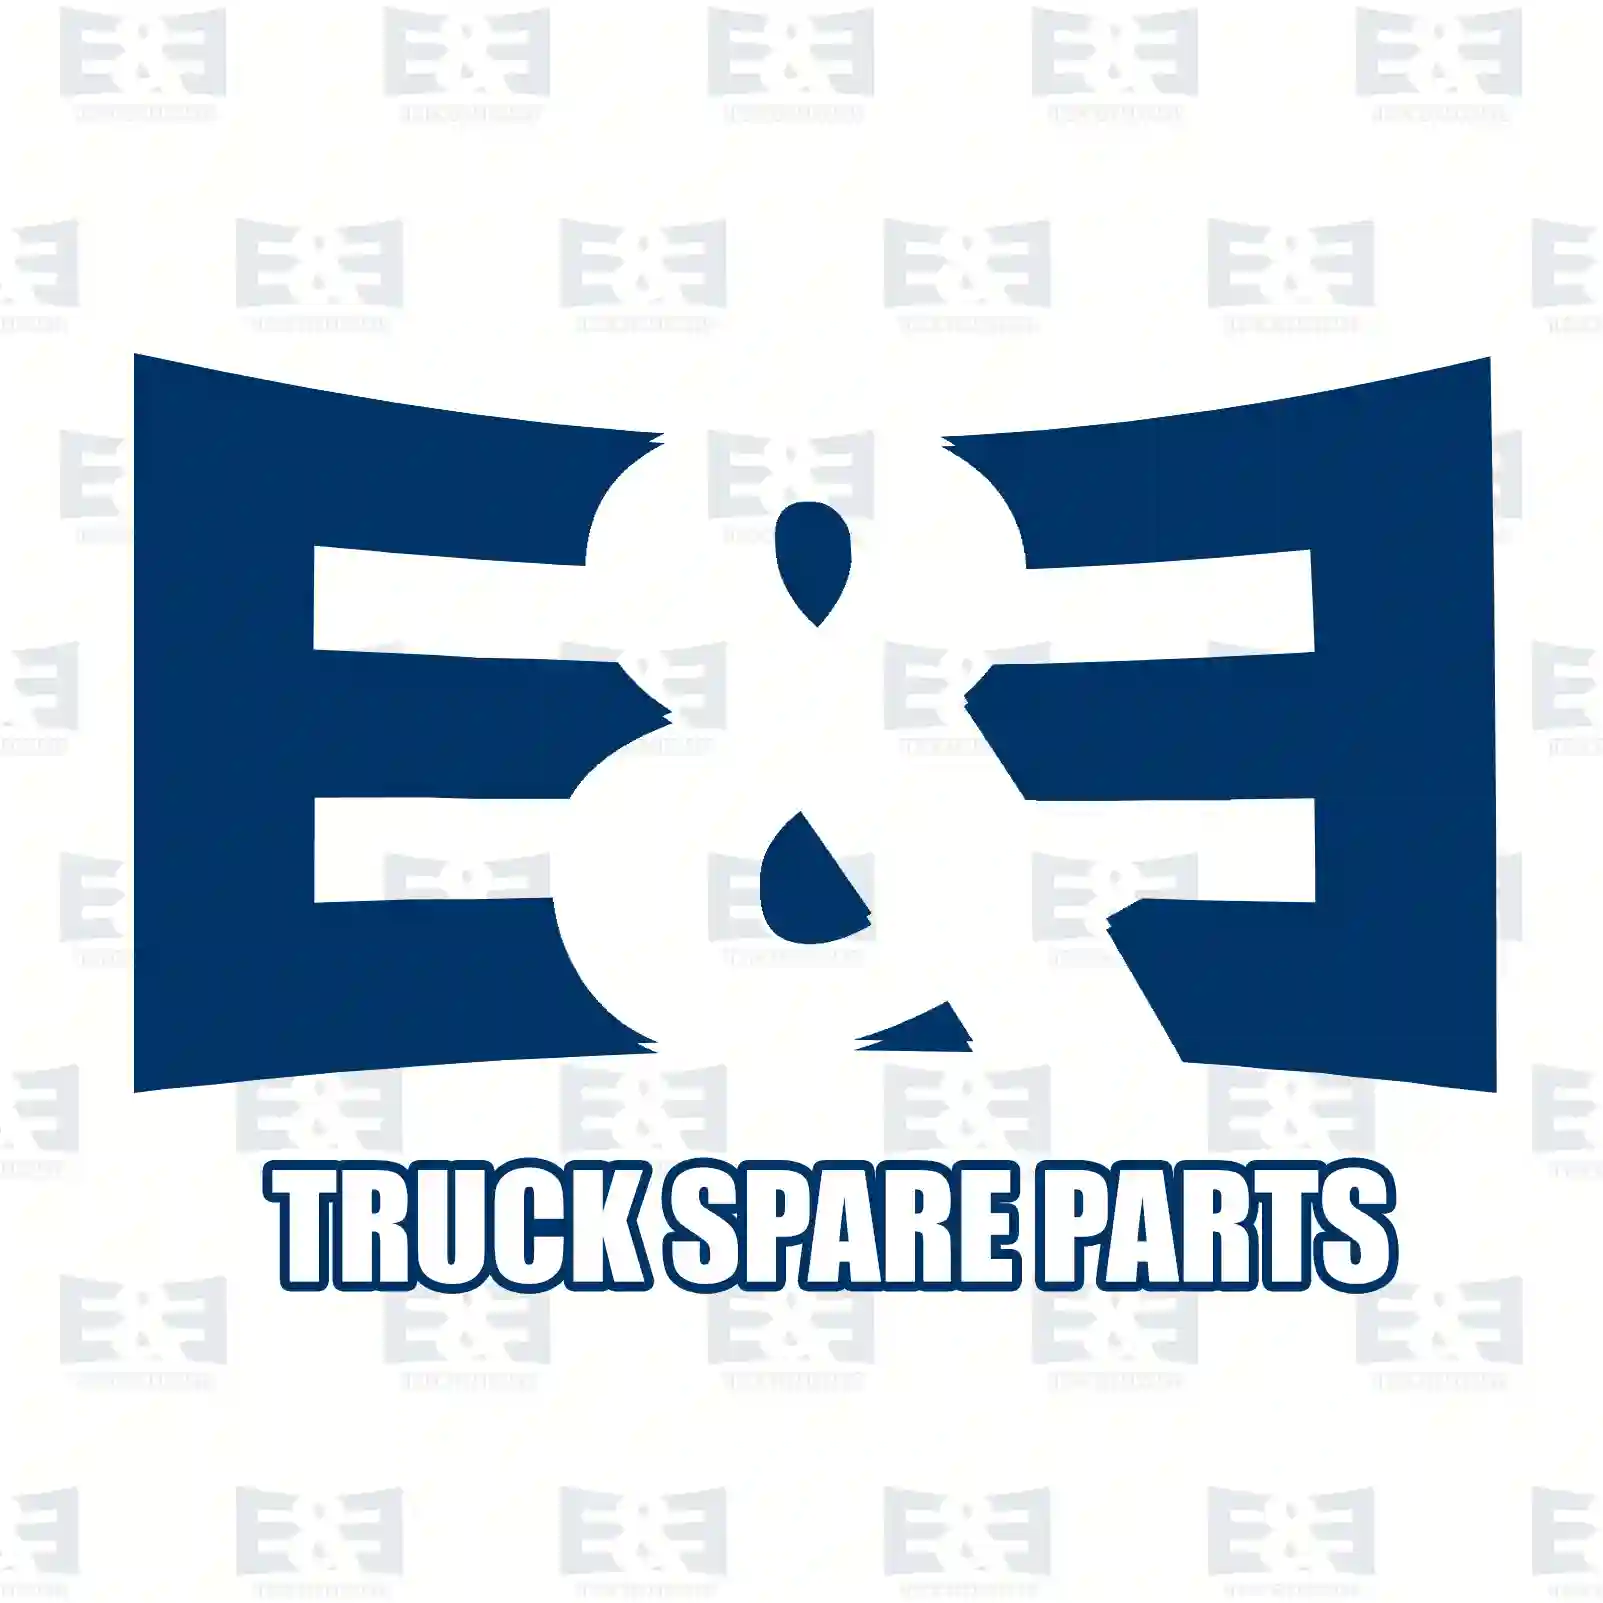 Fan with clutch, 2E2202133, 5010315817, ZG00404-0008 ||  2E2202133 E&E Truck Spare Parts | Truck Spare Parts, Auotomotive Spare Parts Fan with clutch, 2E2202133, 5010315817, ZG00404-0008 ||  2E2202133 E&E Truck Spare Parts | Truck Spare Parts, Auotomotive Spare Parts